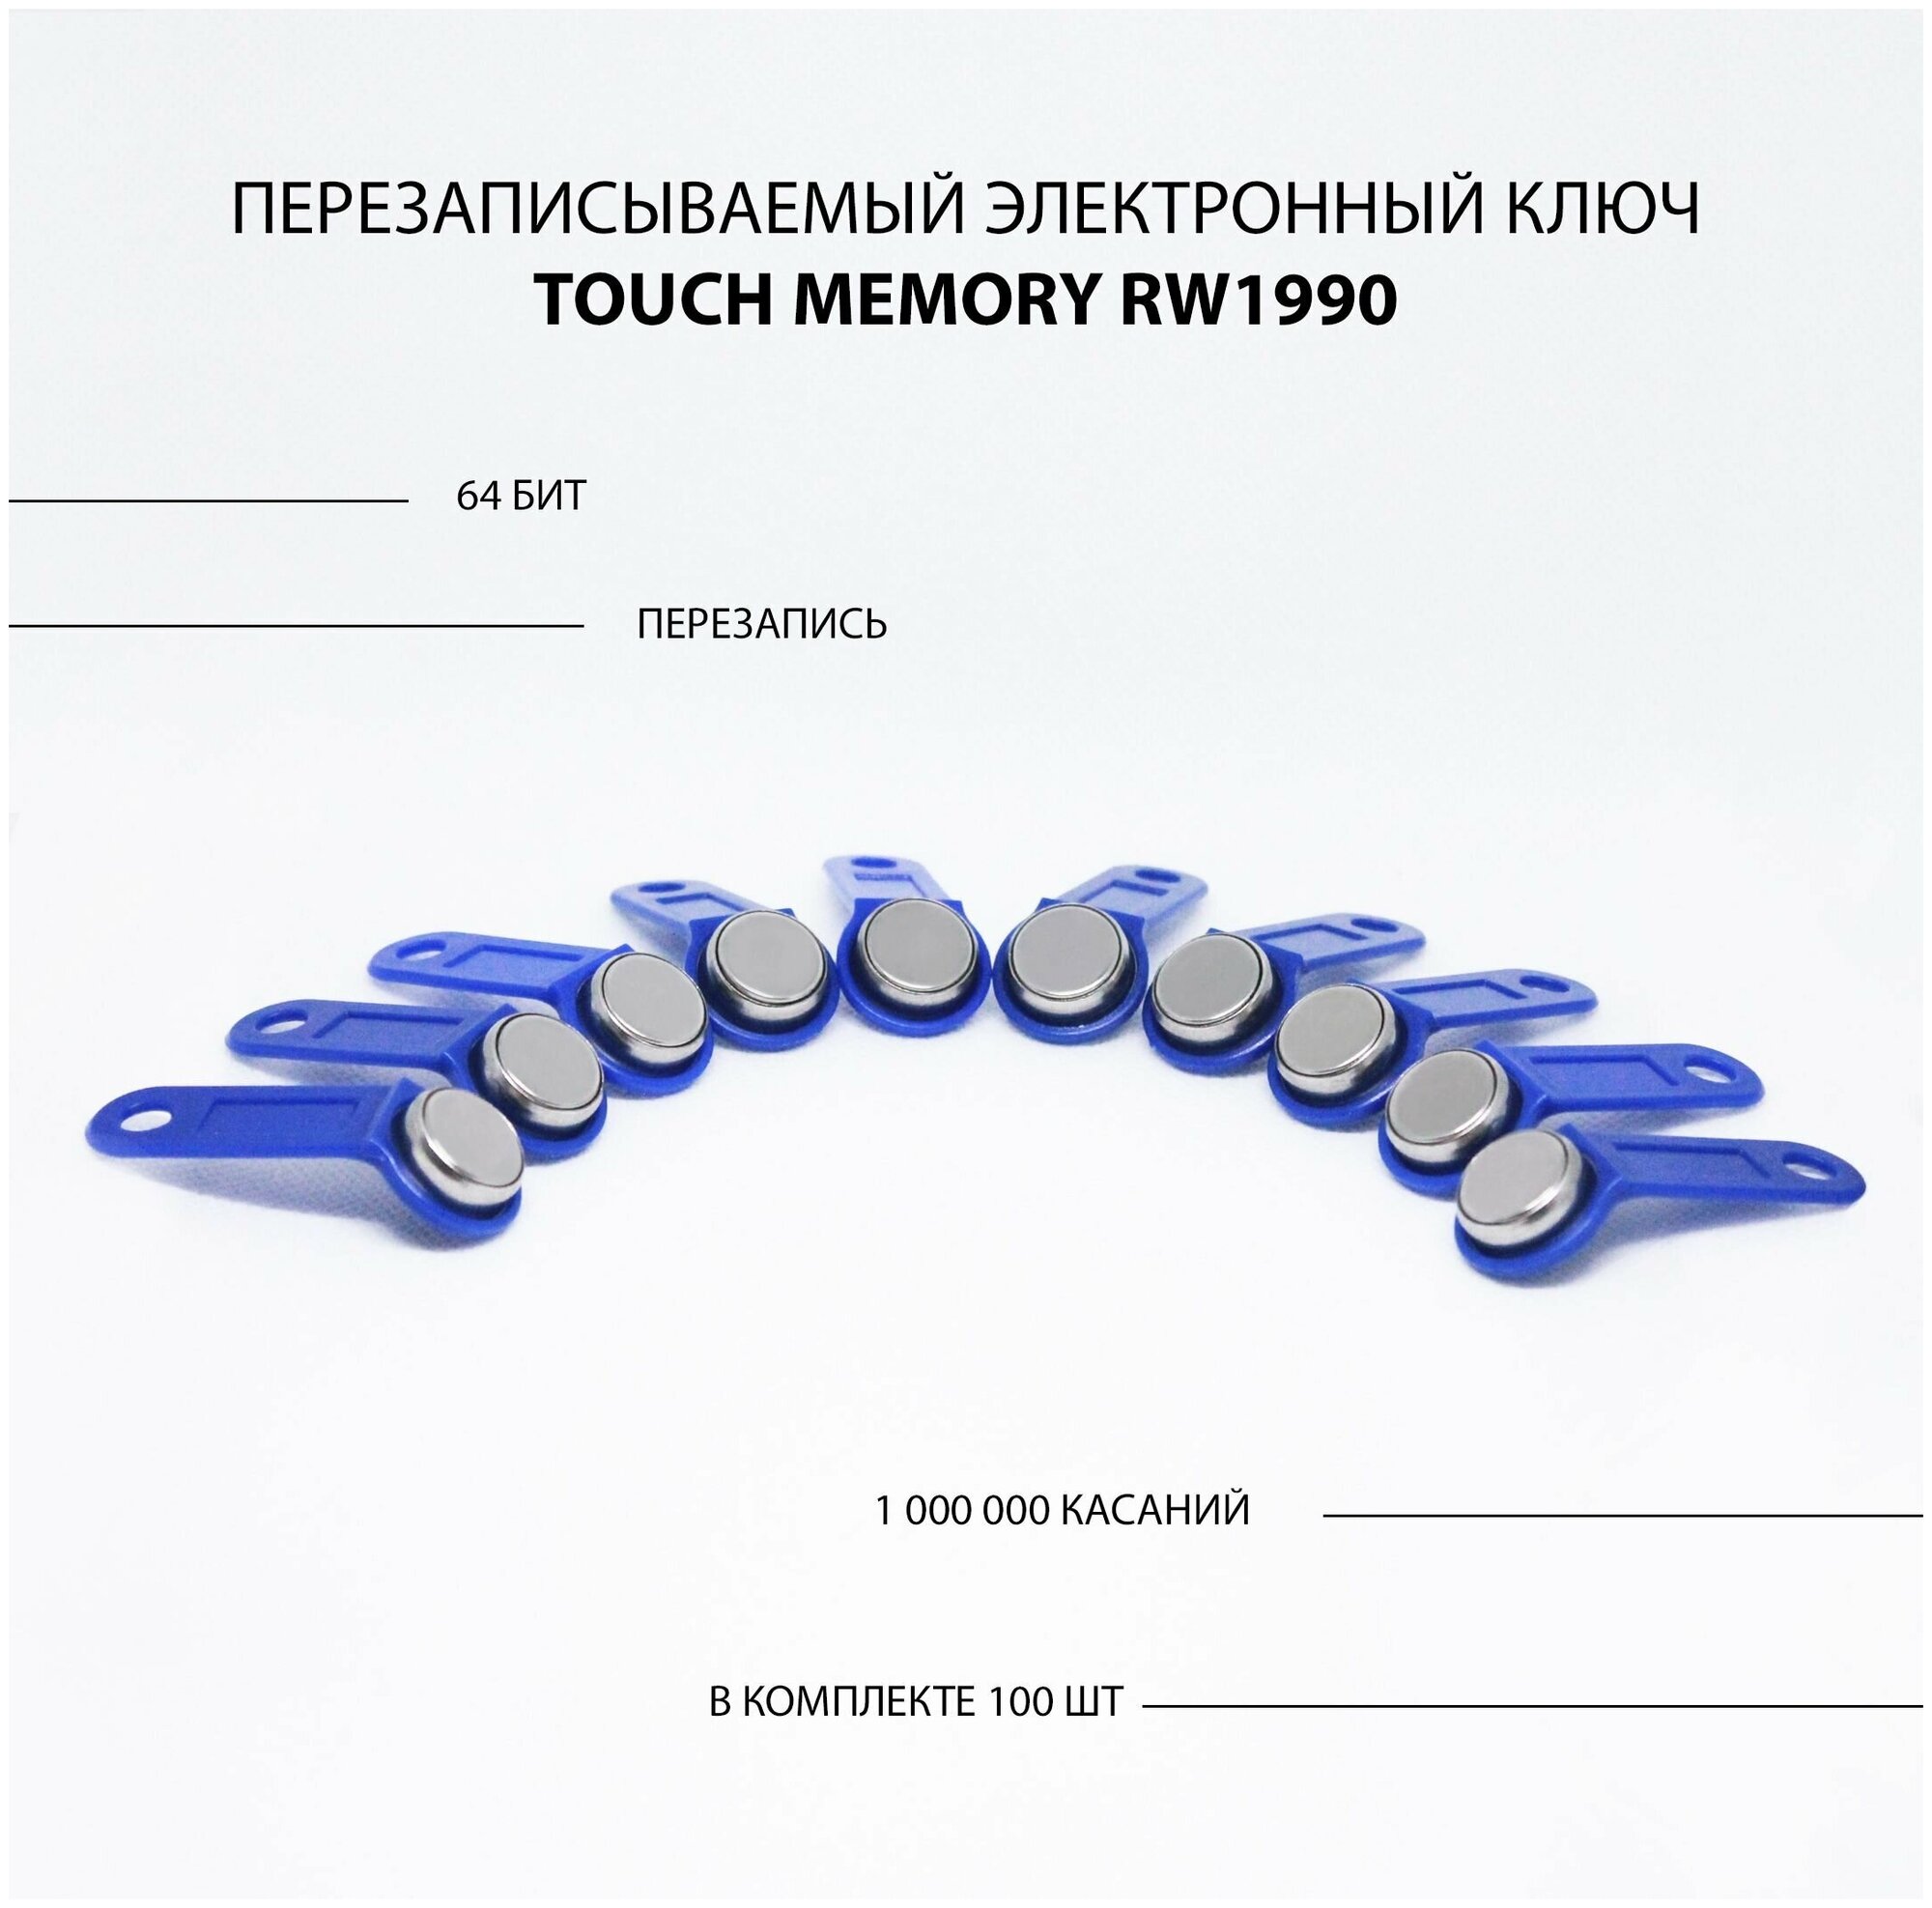 Электронный ключ для домофона RW1990 перезаписываемый ( синий 100 шт ) заготовка таблетка Touch Memory для создания копий контактных ключей TM